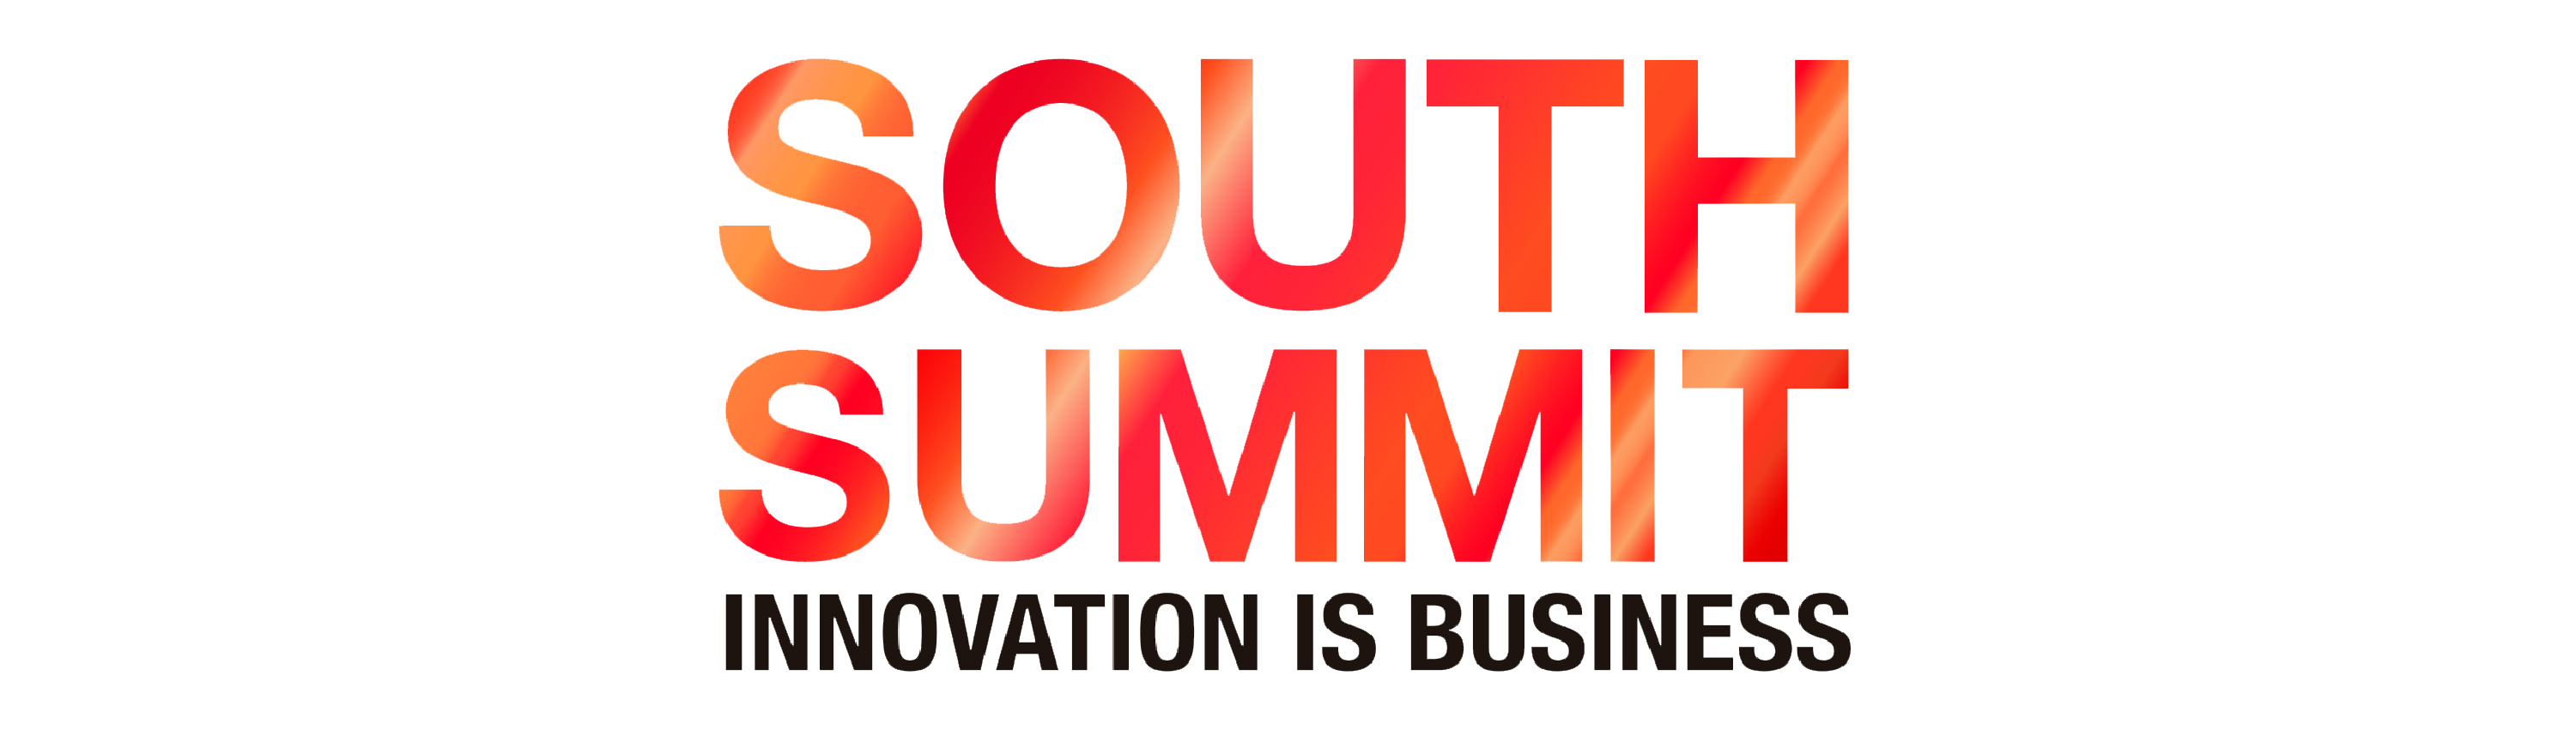 logos premios_South Summit